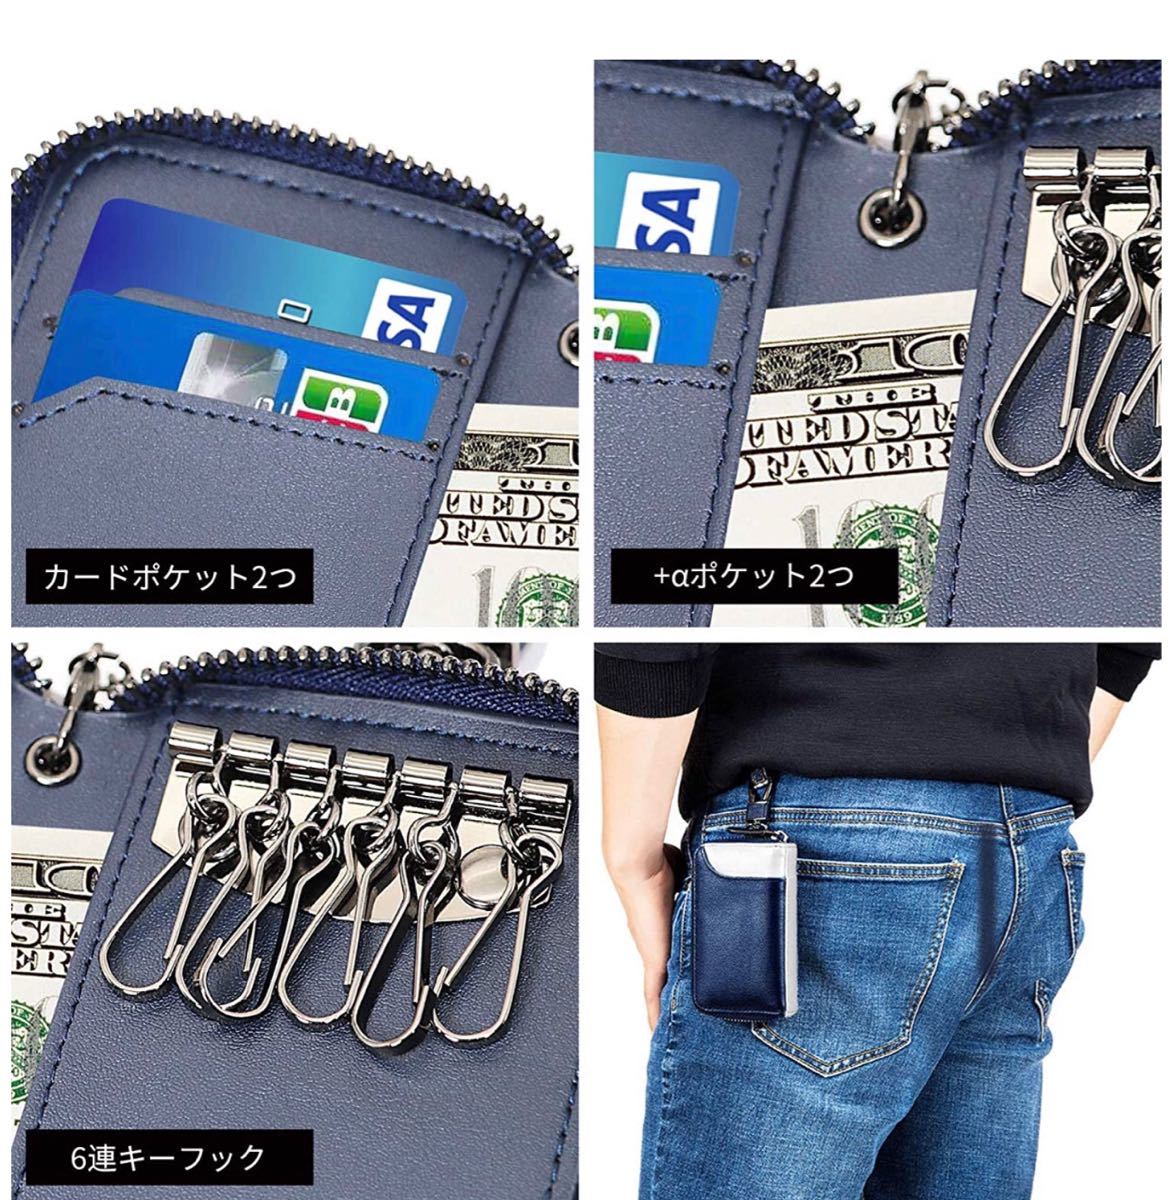 キーケース メンズ カードキーケース レザー  本革 6連 2つ外側ポケット 